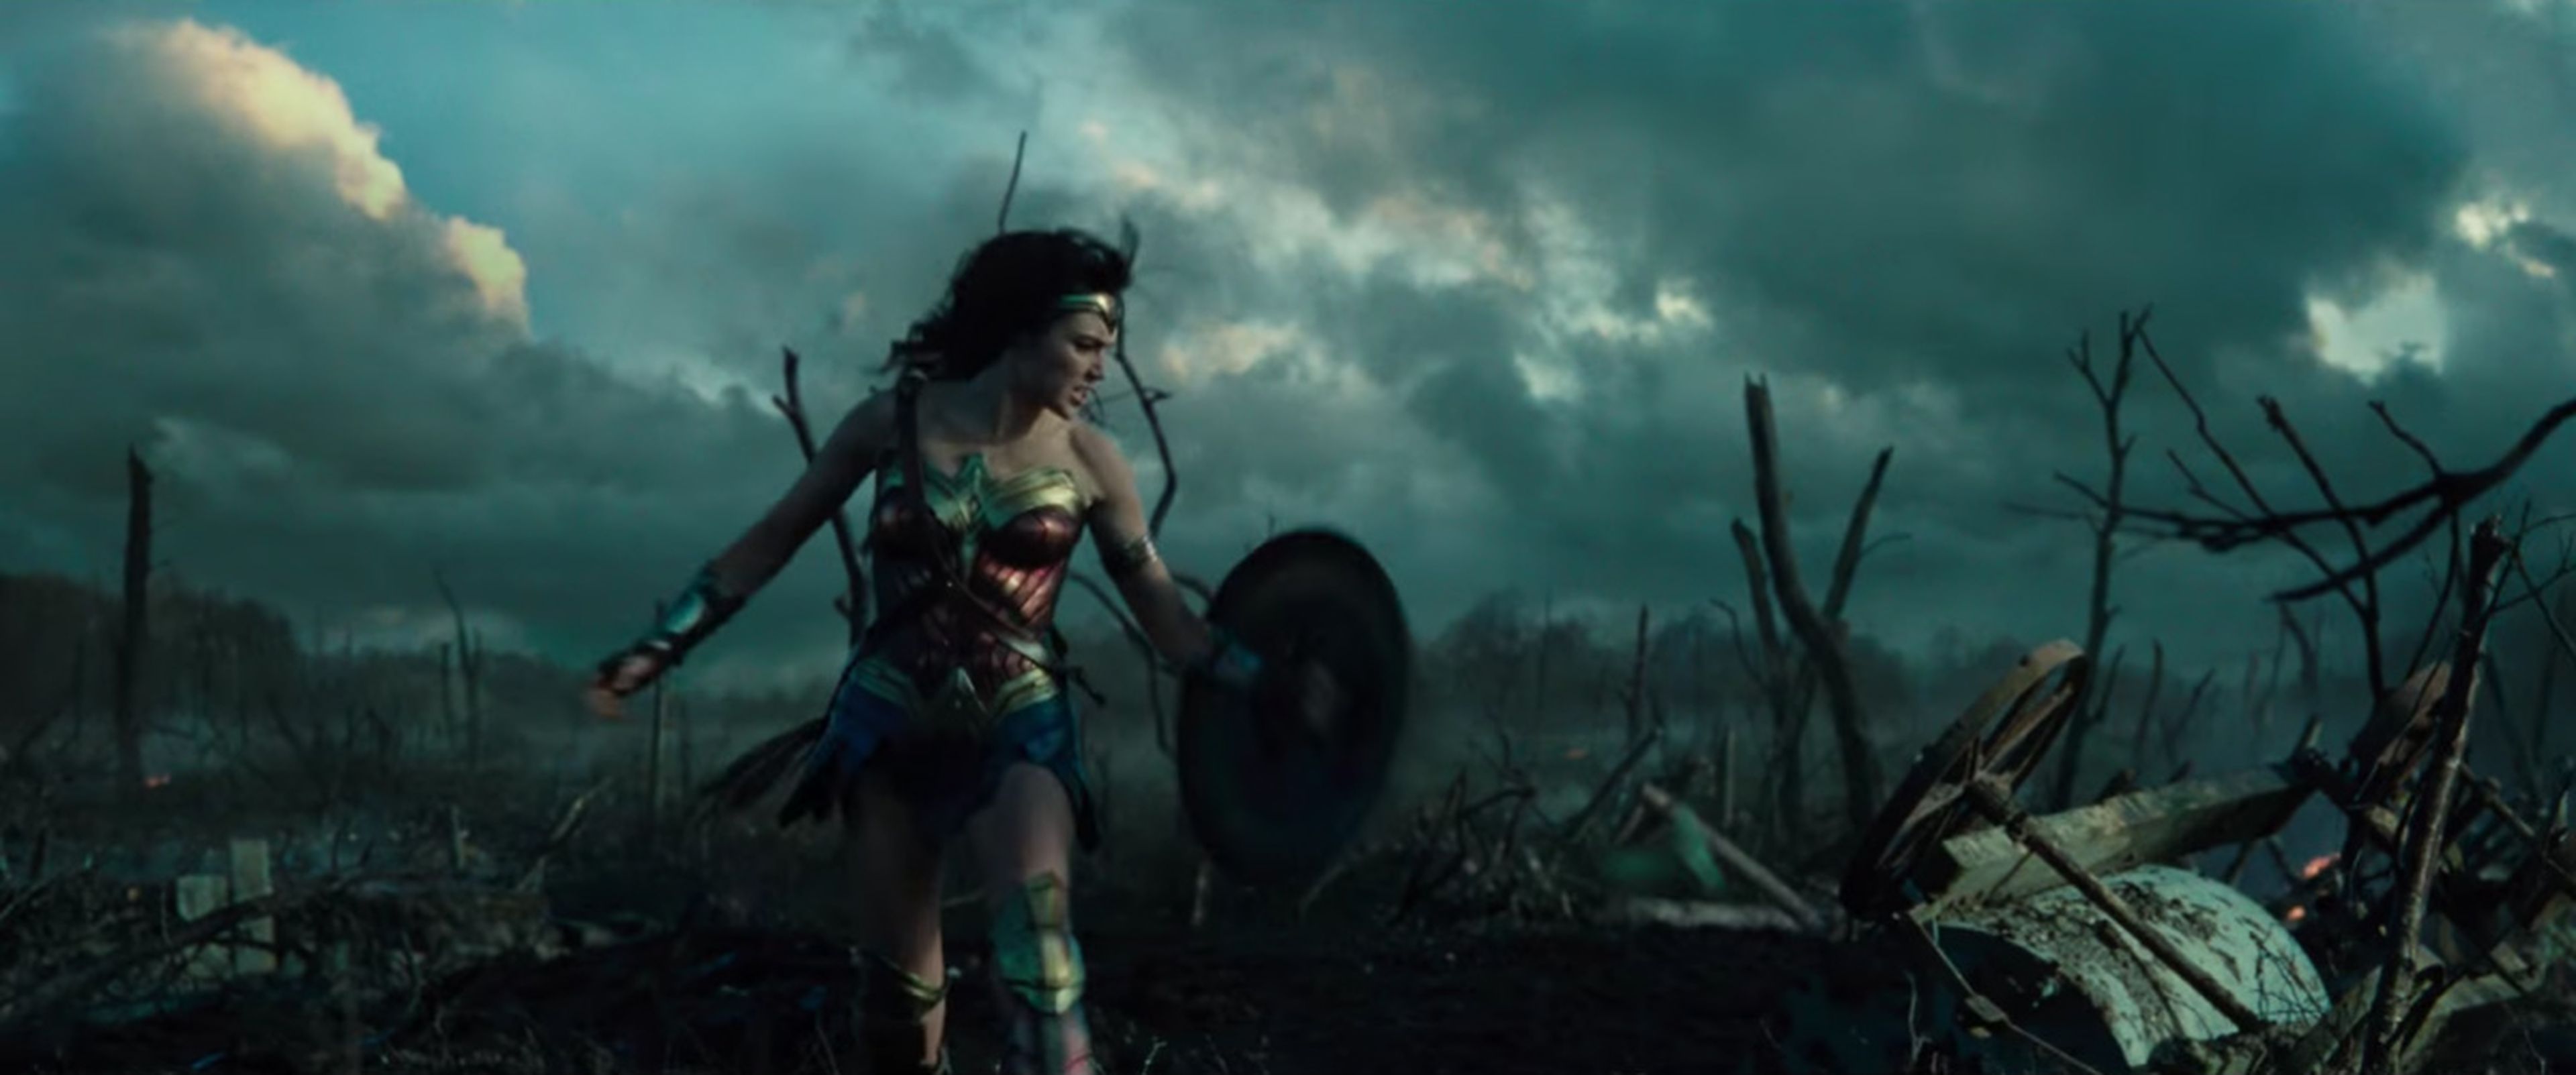 Razones por las que Wonder Woman merece un Oscar a la mejor película